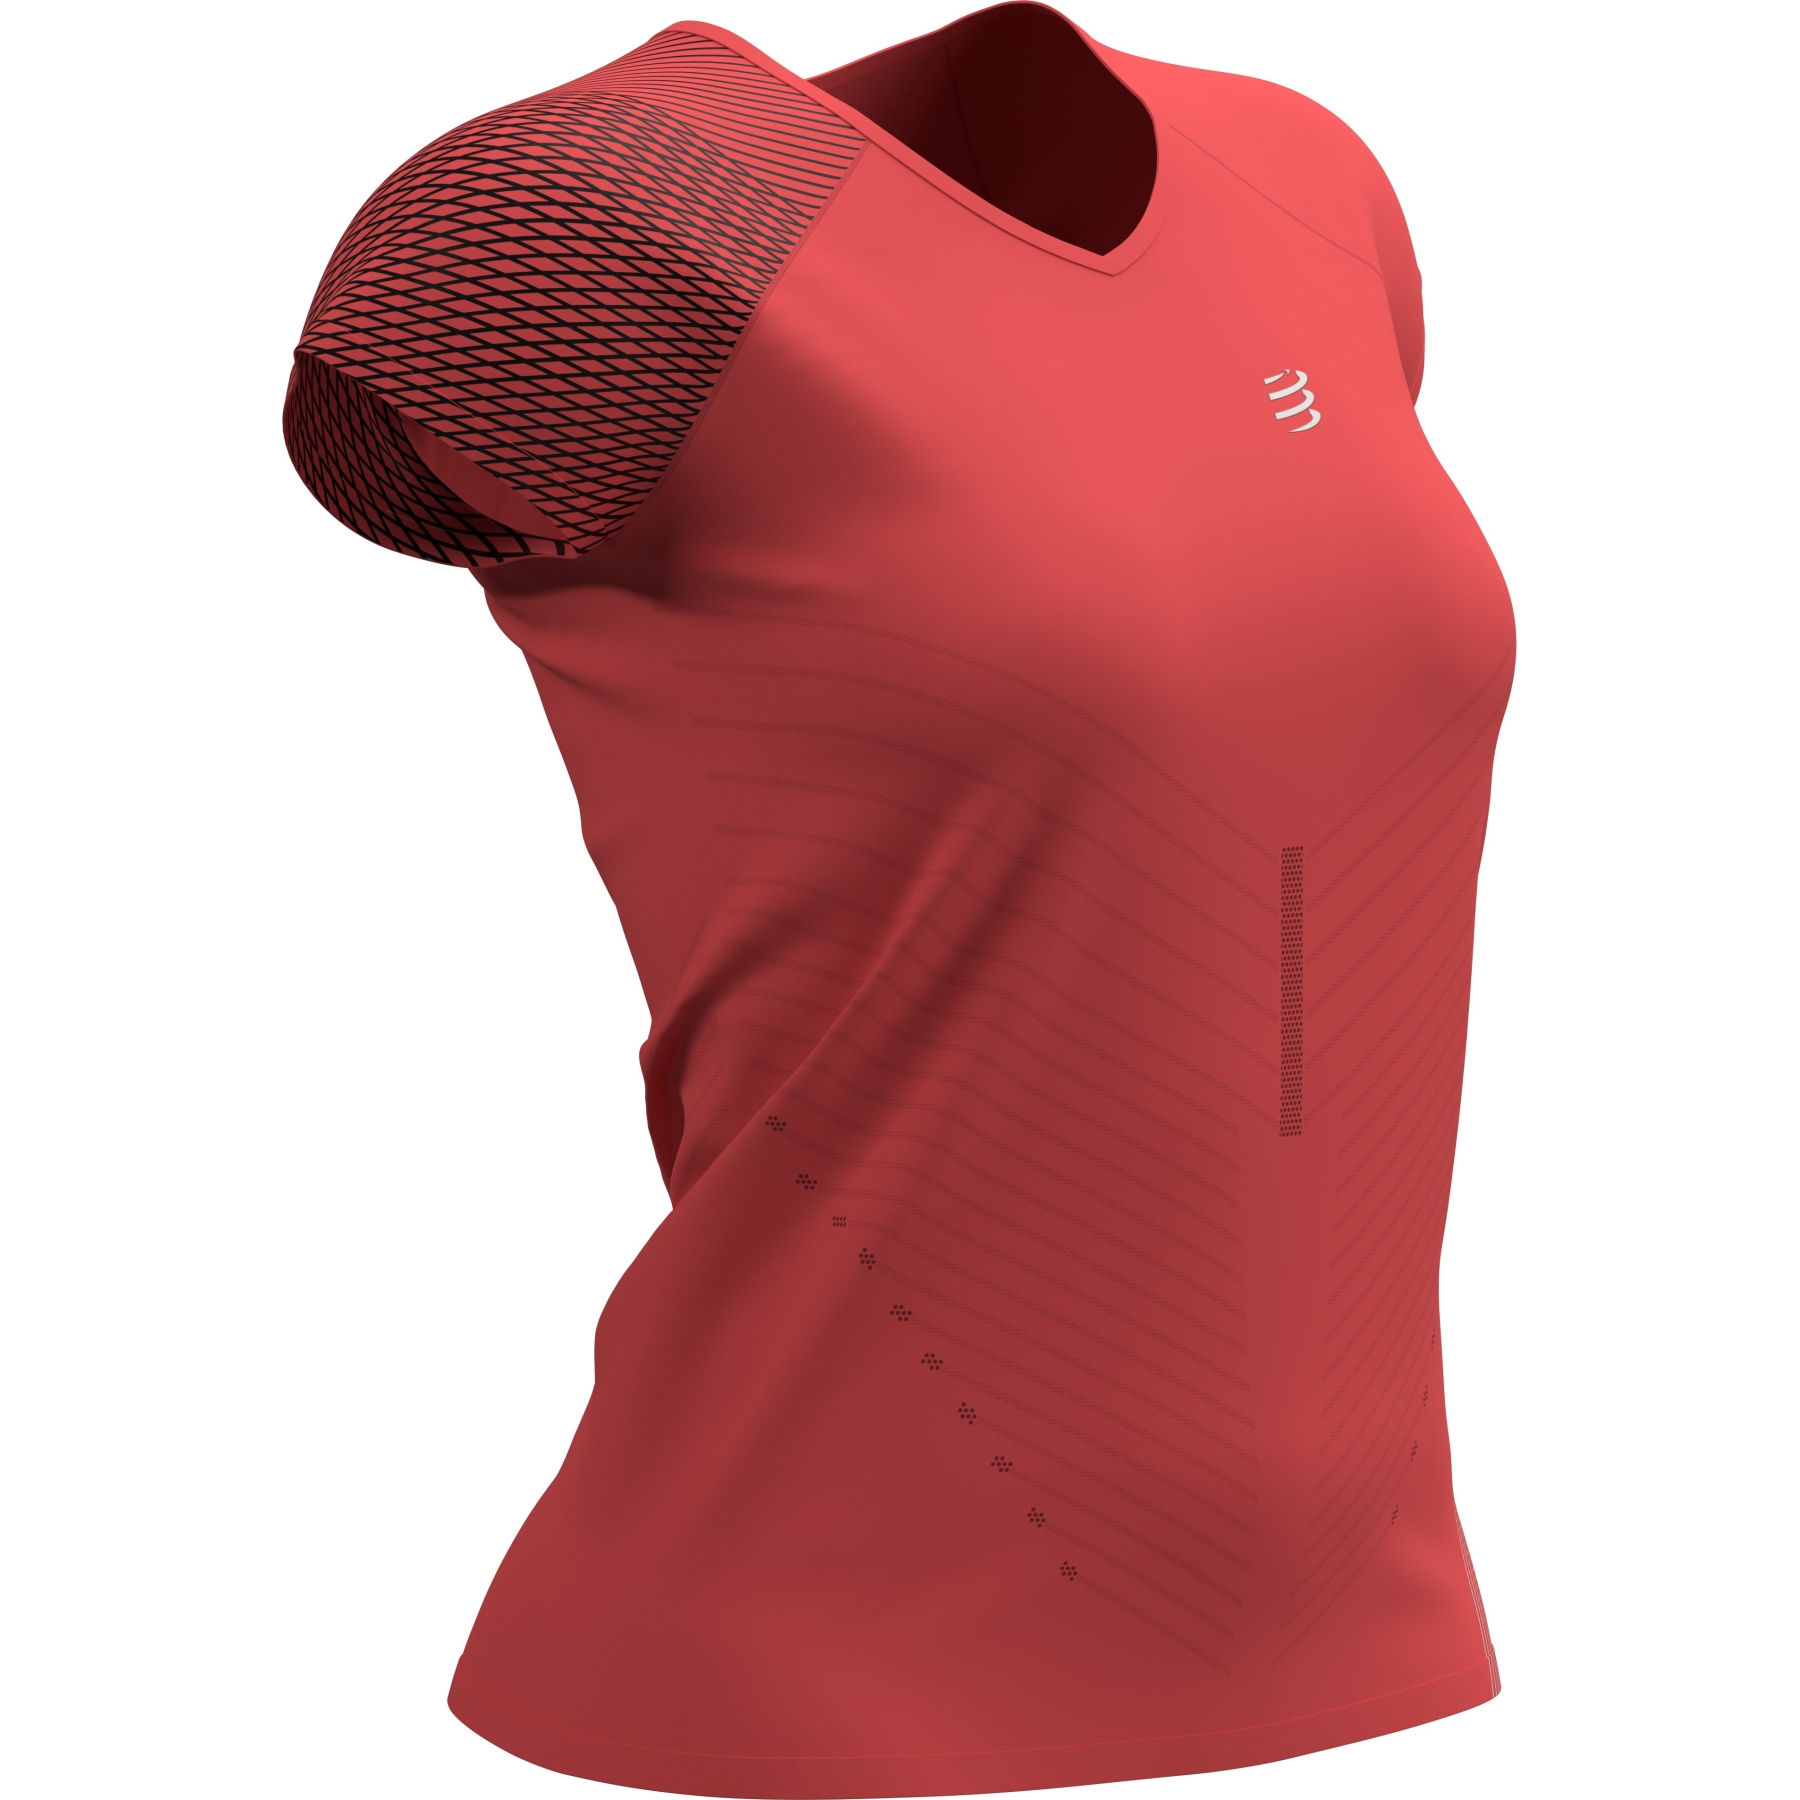 Produktbild von Compressport Performance T-Shirt Damen - coral